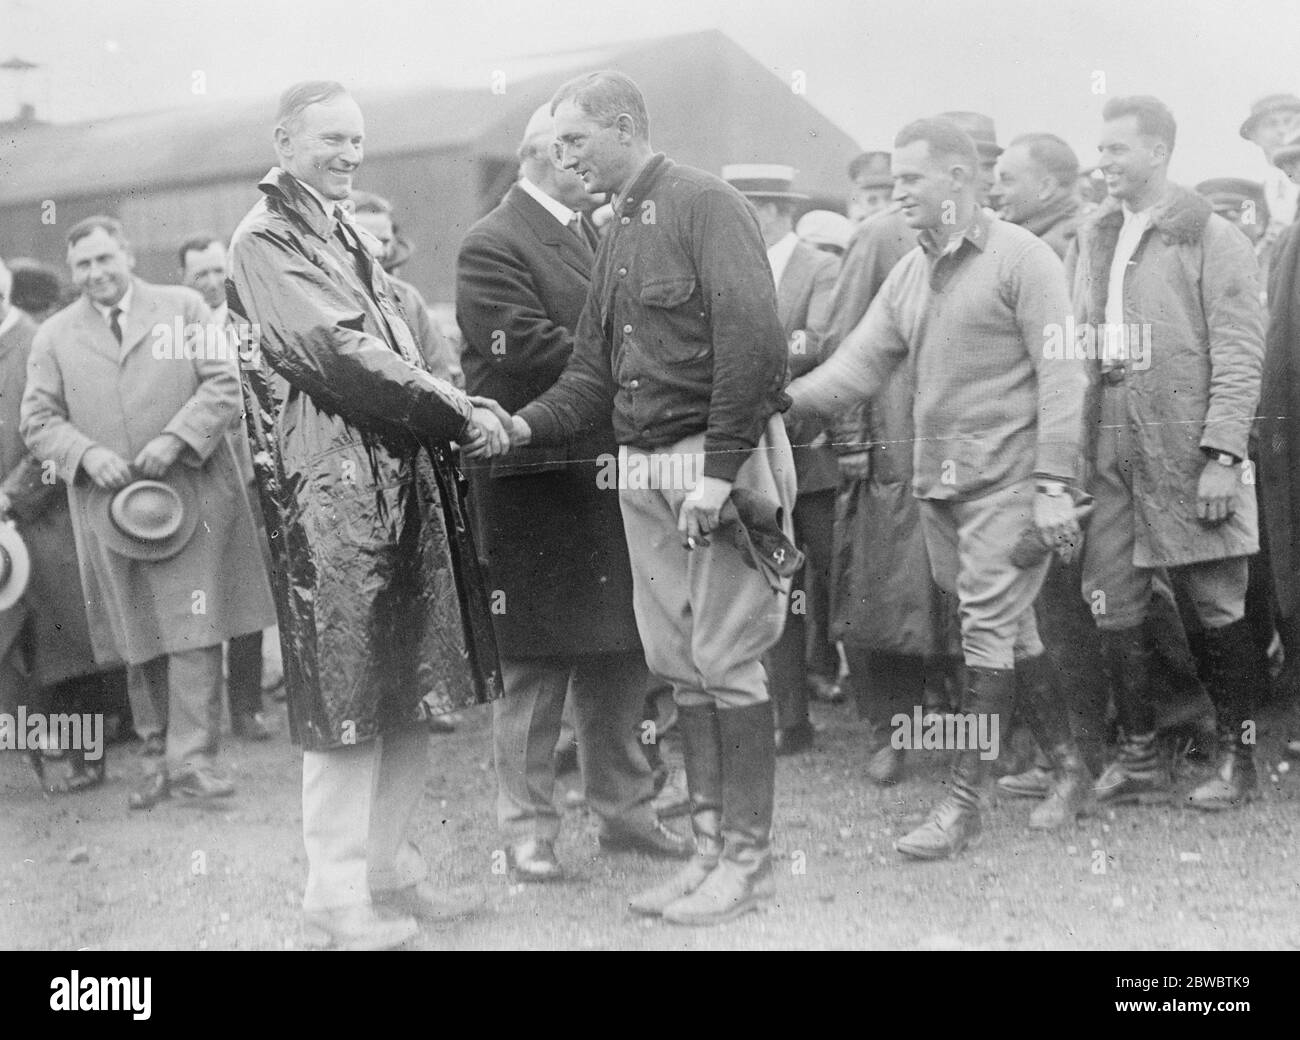 Le Président Coolidge félicite le Président des Flyers du monde américain, M. Coolidge ( à gauche ), et le Secrétaire à la guerre, M. Weeks , félicitent les circulaires américaines du monde entier pour leur arrivée à Bolling Field , Washington, le 16 septembre 1924 Banque D'Images